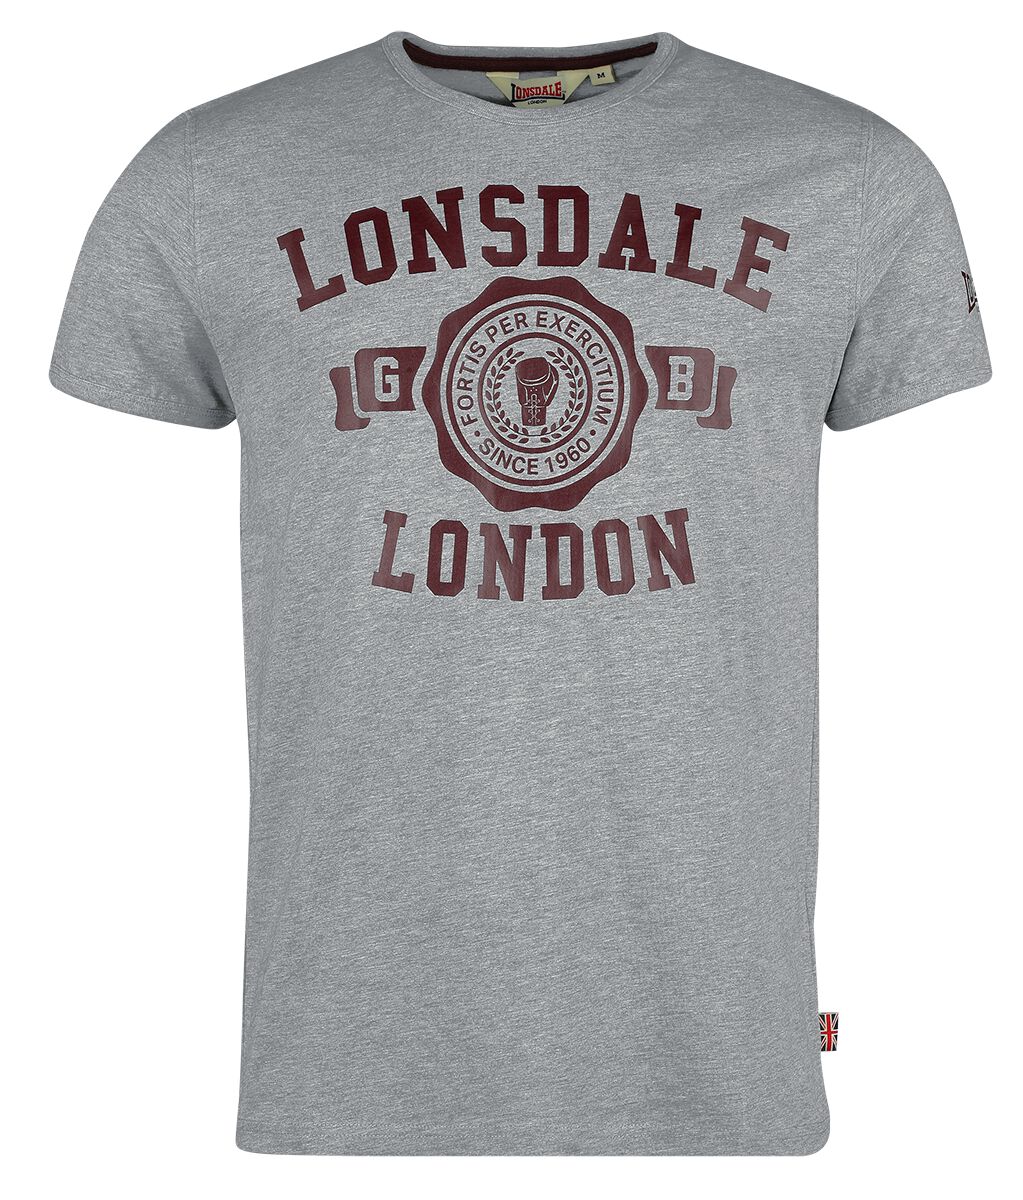 Lonsdale London T-Shirt - MURRISTER - S bis XXL - für Männer - Größe XXL - grau meliert